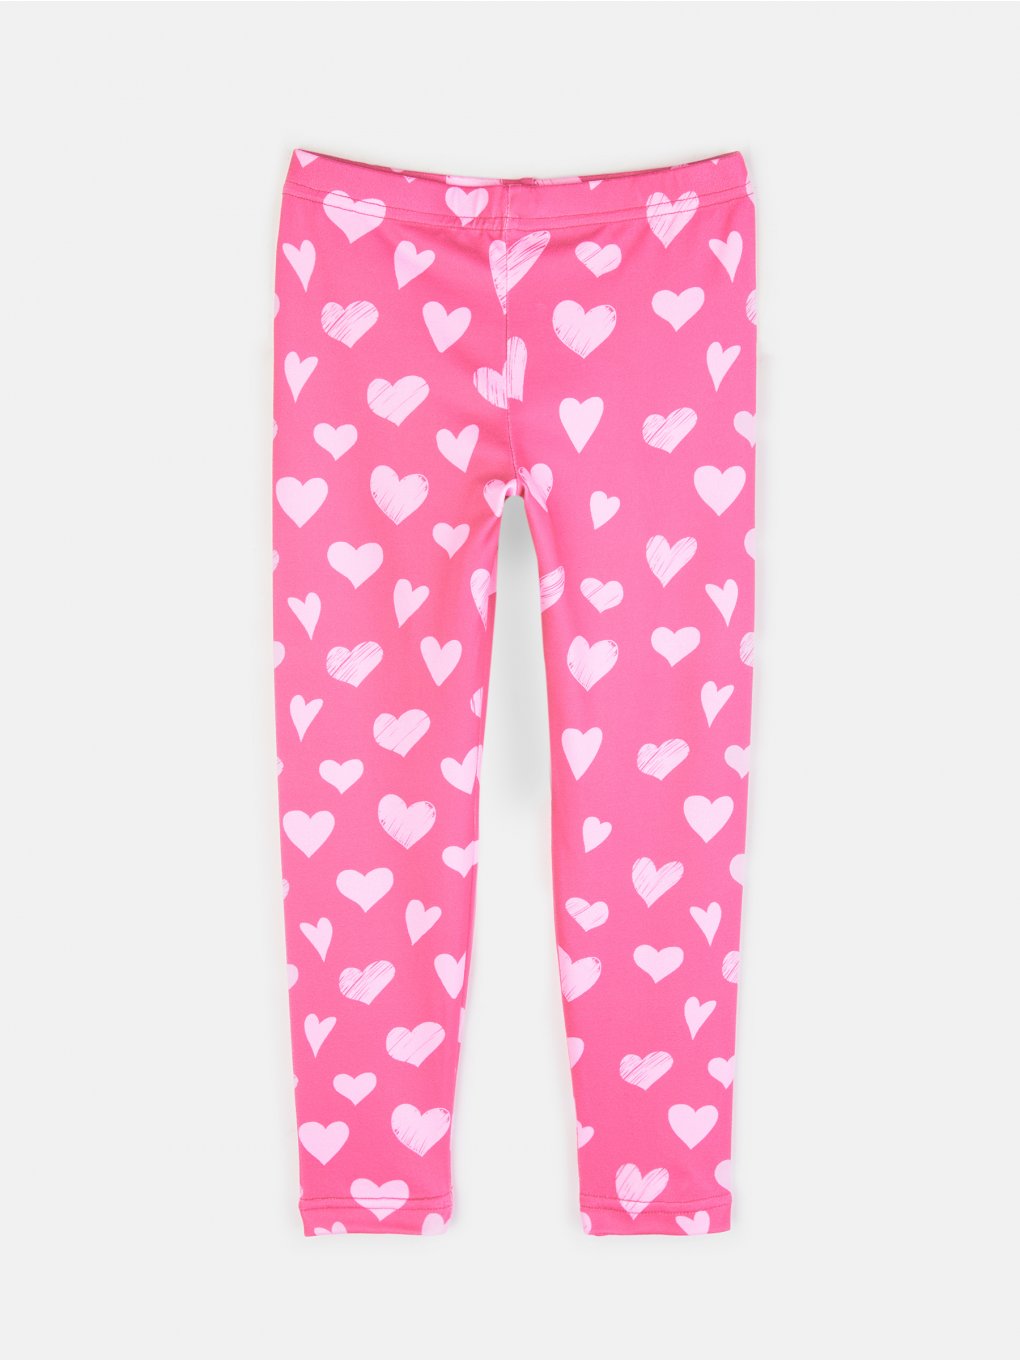 Hearts print leggings